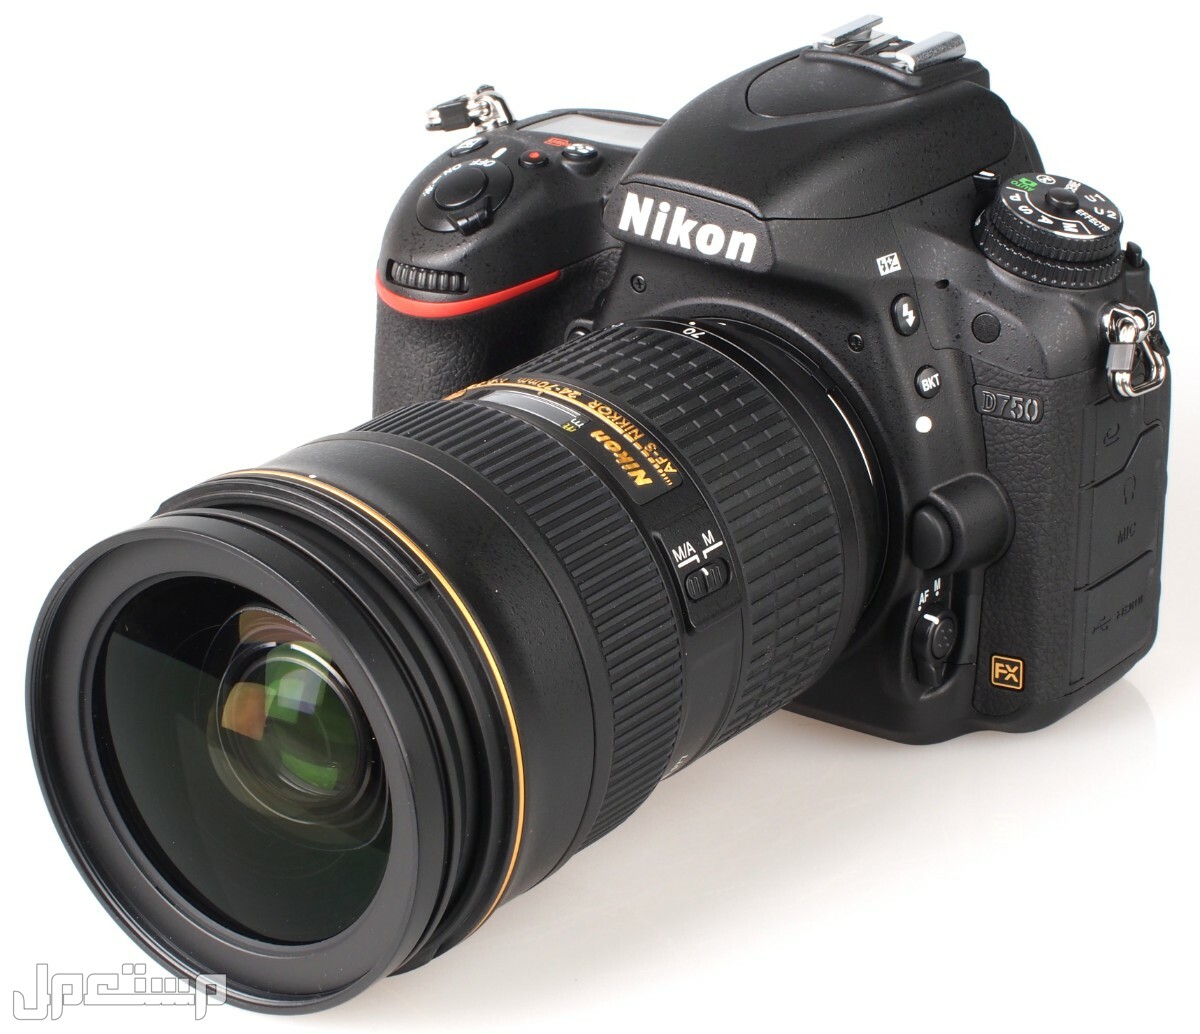 مواصفات ومميزات وأسعار أفضل أنواع كاميرات نيكون للمحترفين في الكويت كاميرا Nikon D750